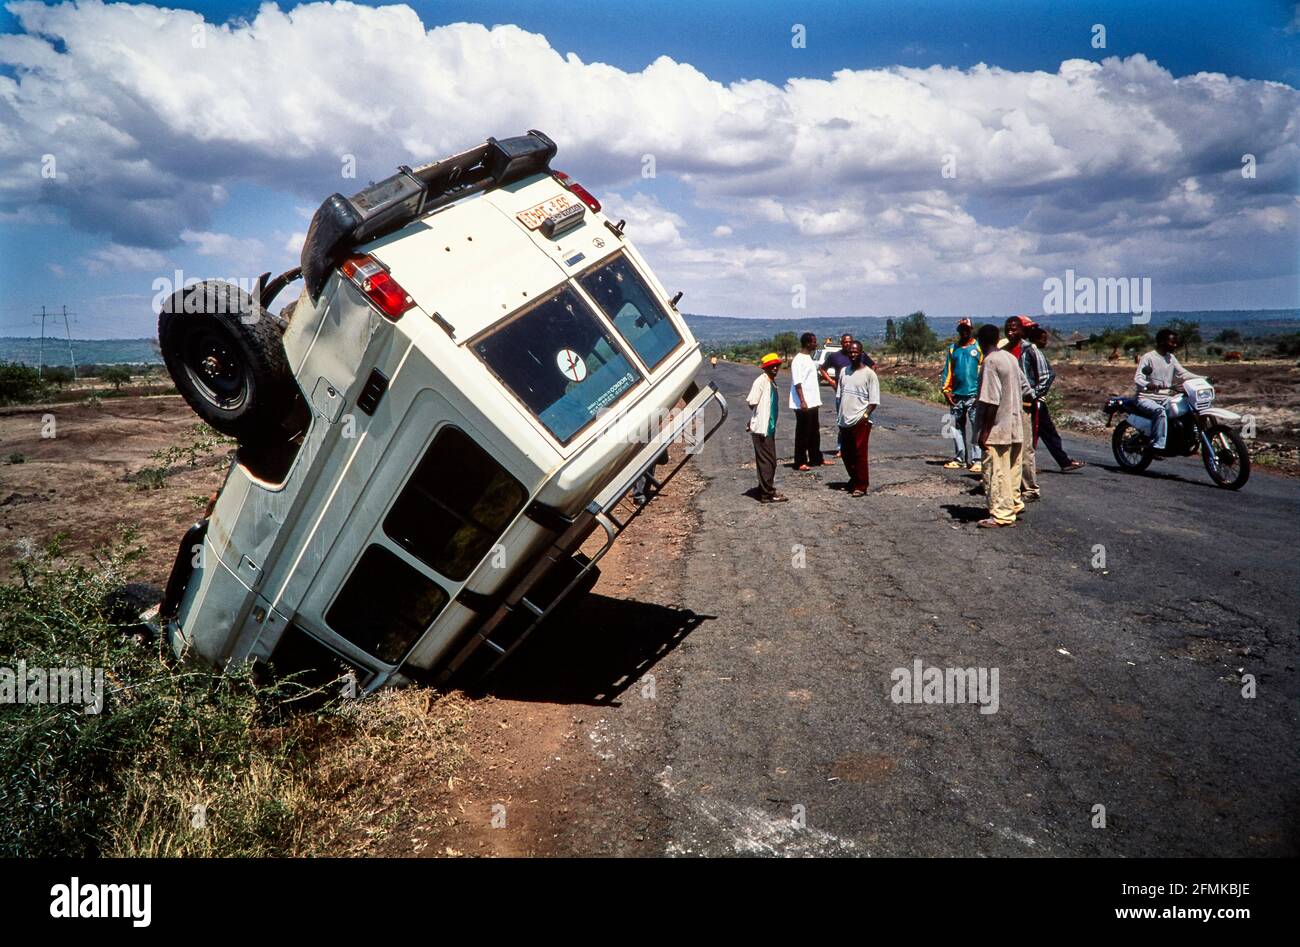 Las carreteras etíopes son peligrosas. A menudo se ven restos de naufragios en el lado de la carretera. Aquí acaba de ocurrir un accidente en la carretera de Arba Minch a Shashem Foto de stock